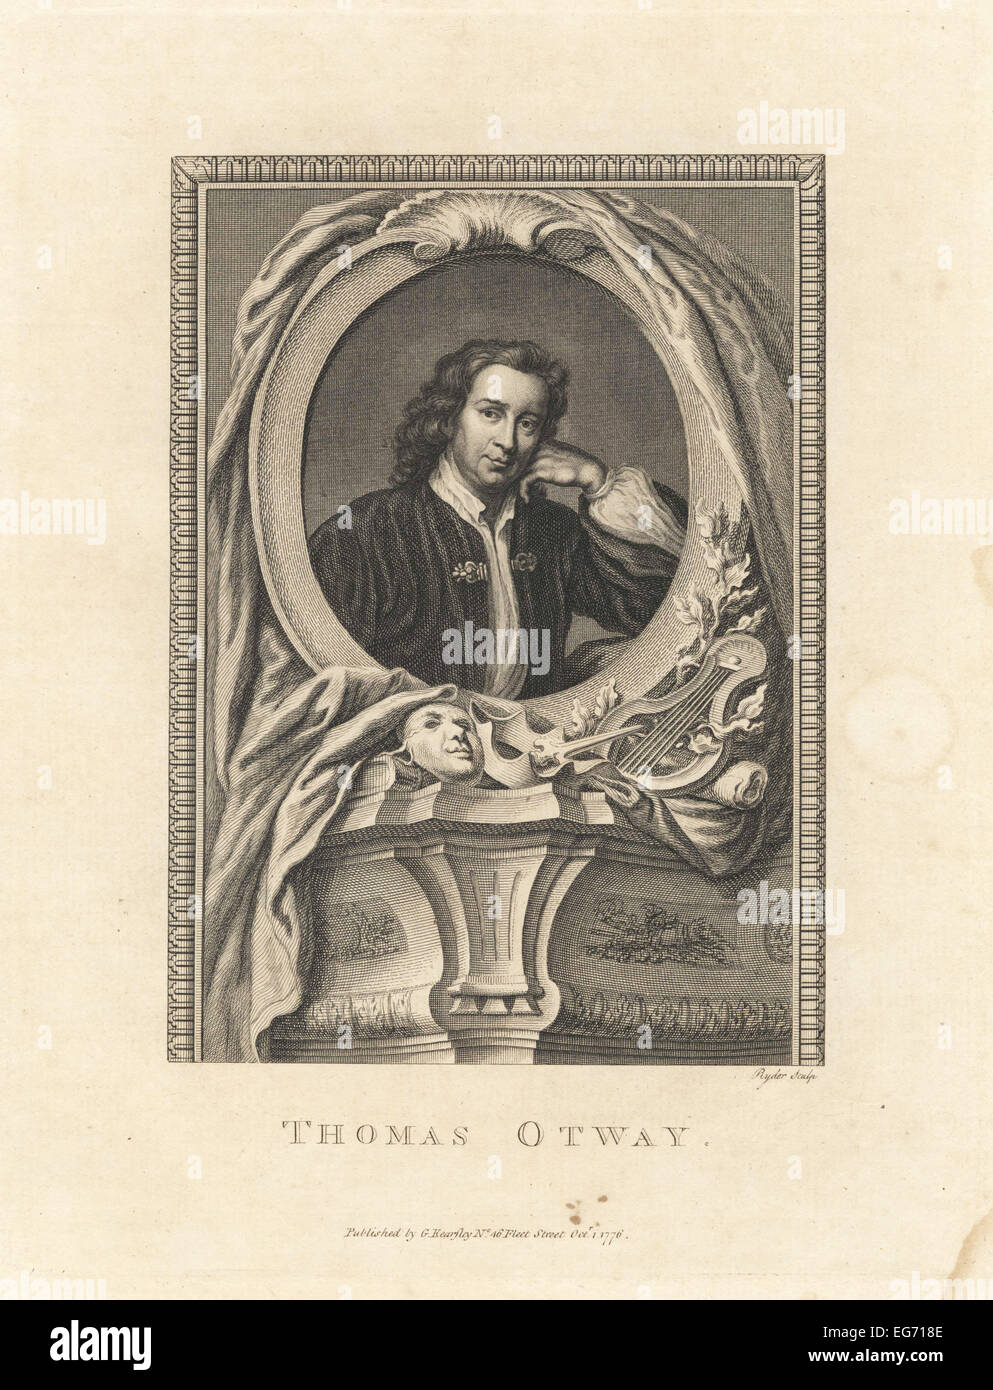 Porträt von Thomas Otway, englische Wiederherstellung Dichter und Dramatiker, 1652-1685. In einem Oval mit Lyra, dramatische Maske und Blumen geschmückt. Stockfoto